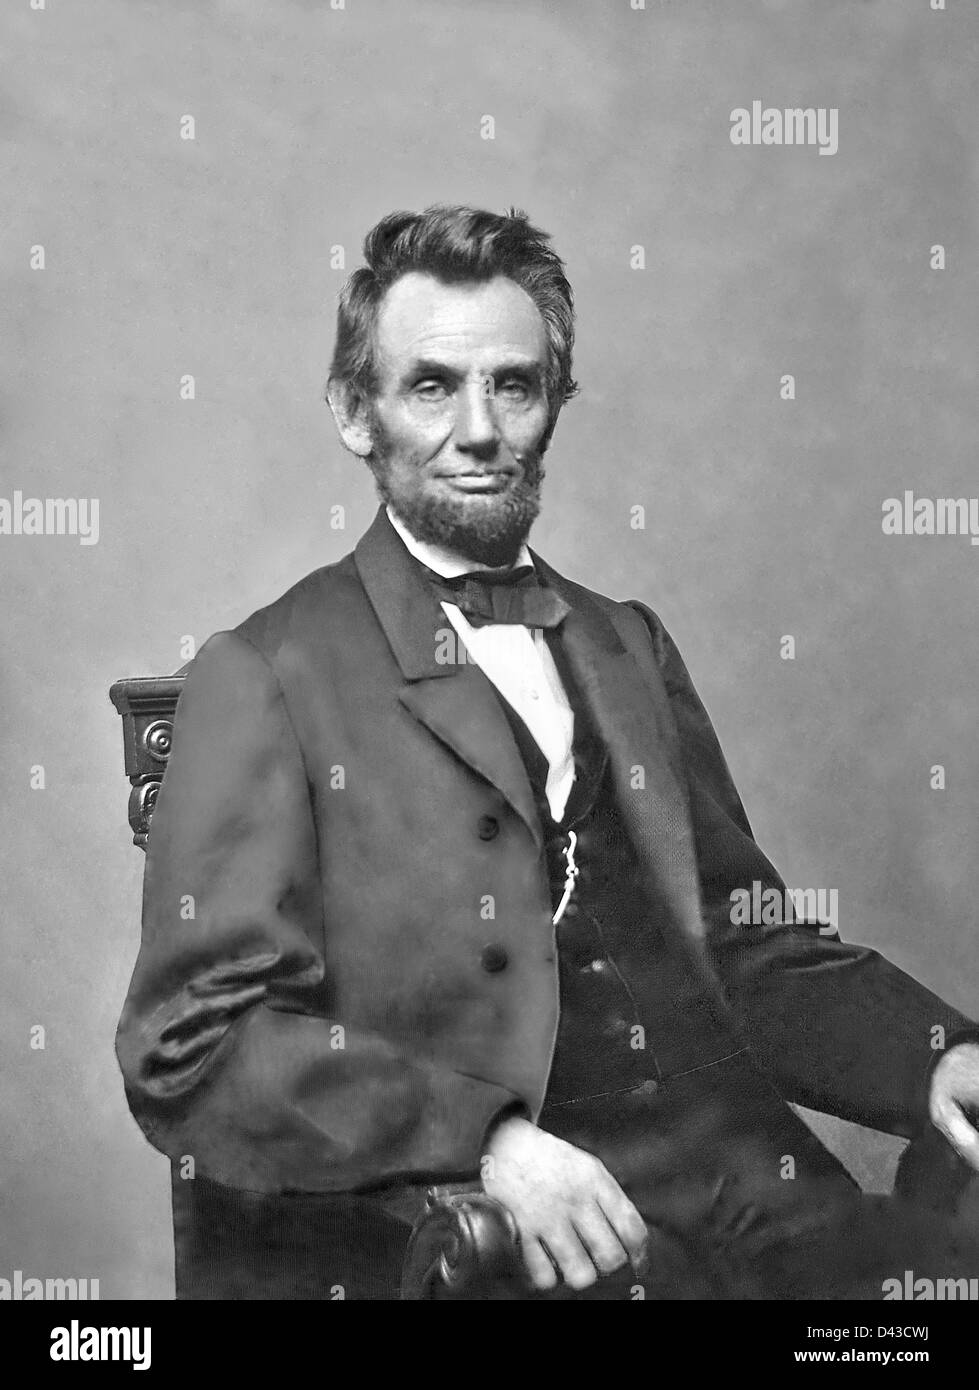 Portrait du président Abraham Lincoln par Mathew Brady 1860. À partir de l'original retouché pour supprimer les artefacts. Banque D'Images